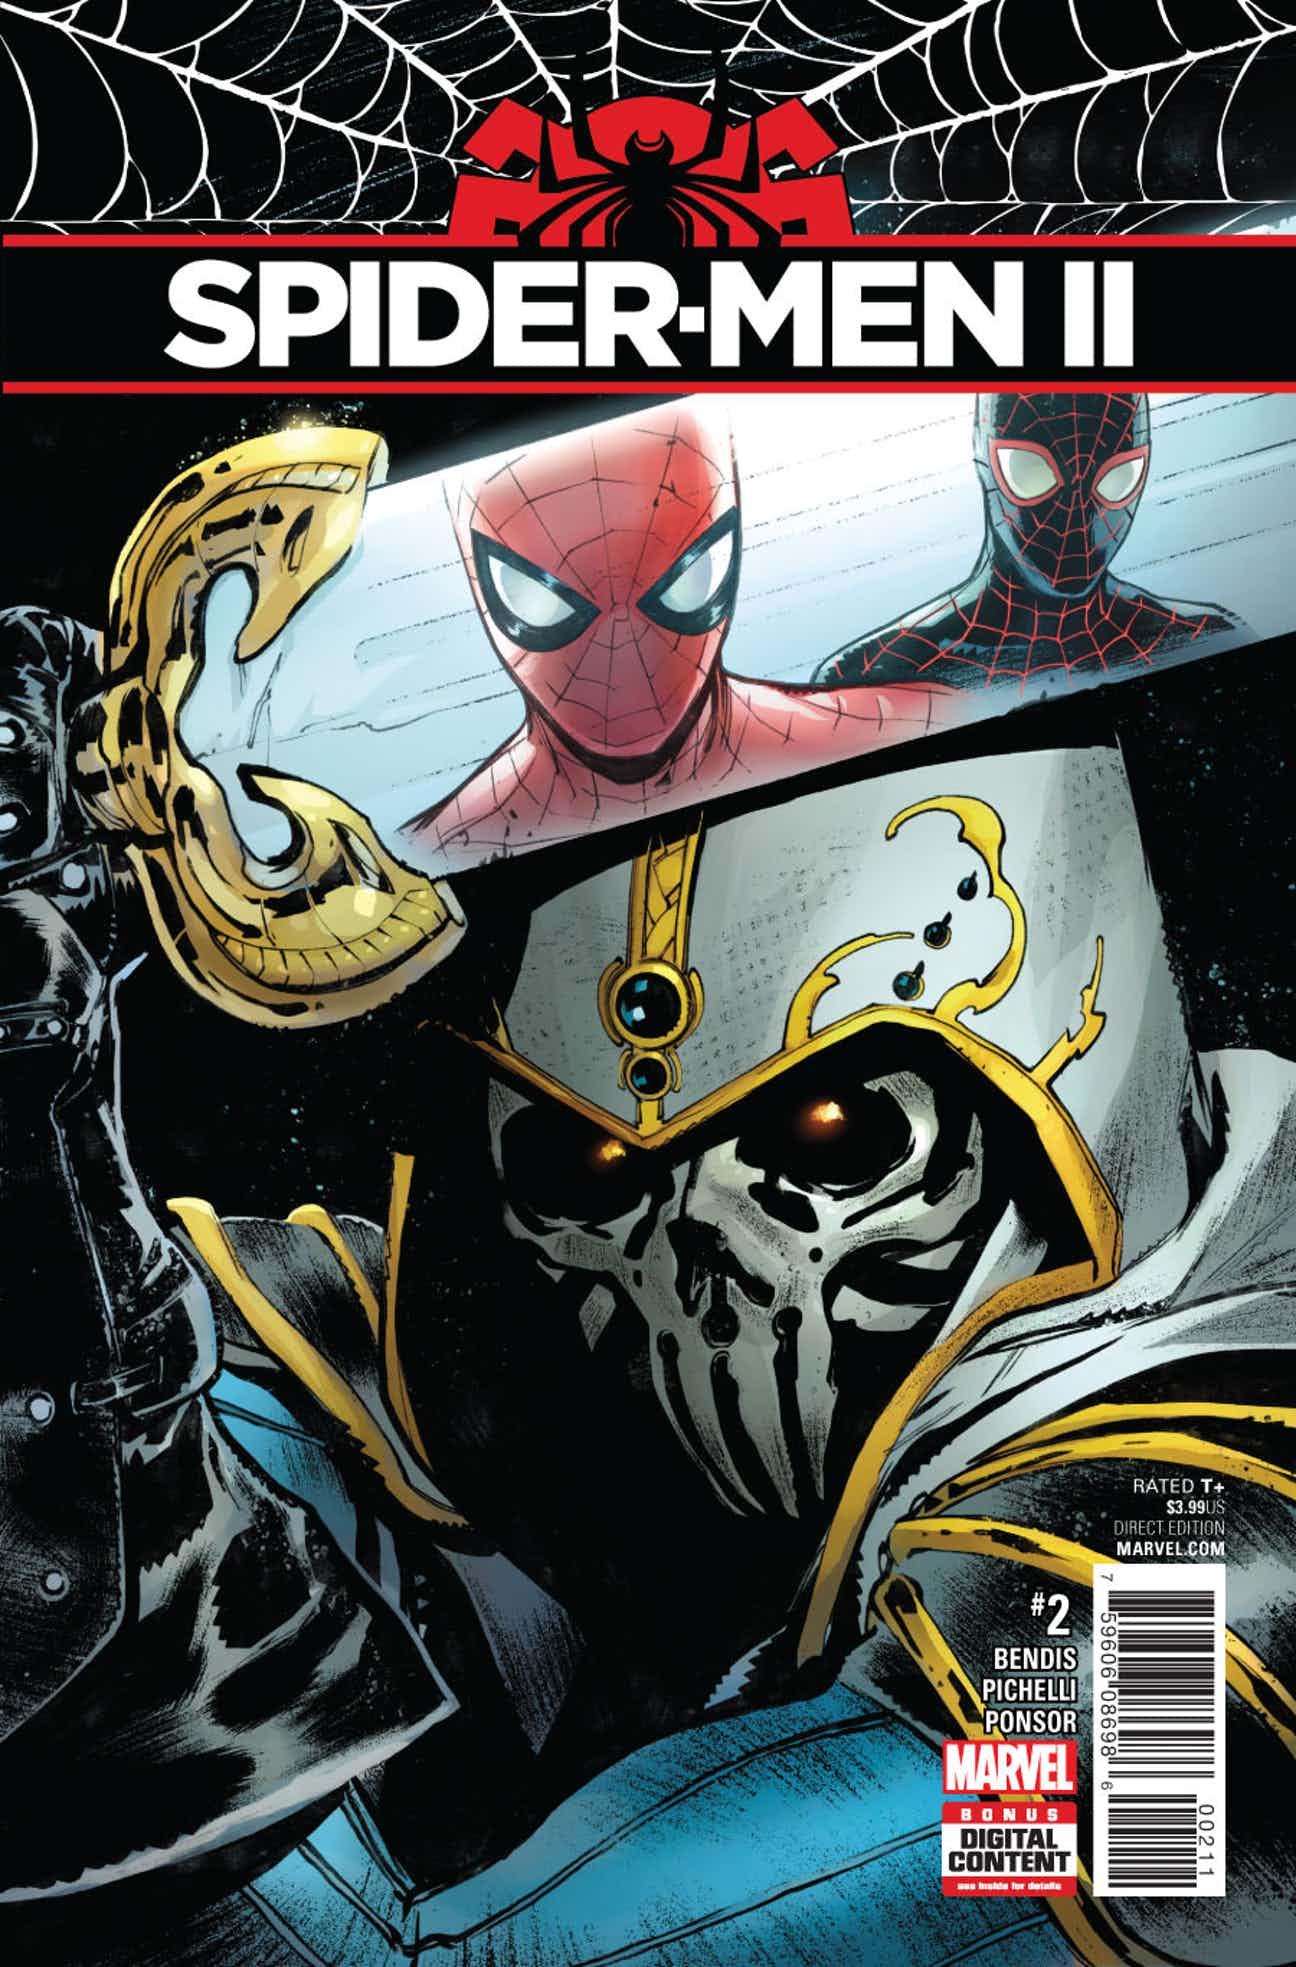 Spider-Men II Vol. 1 #2